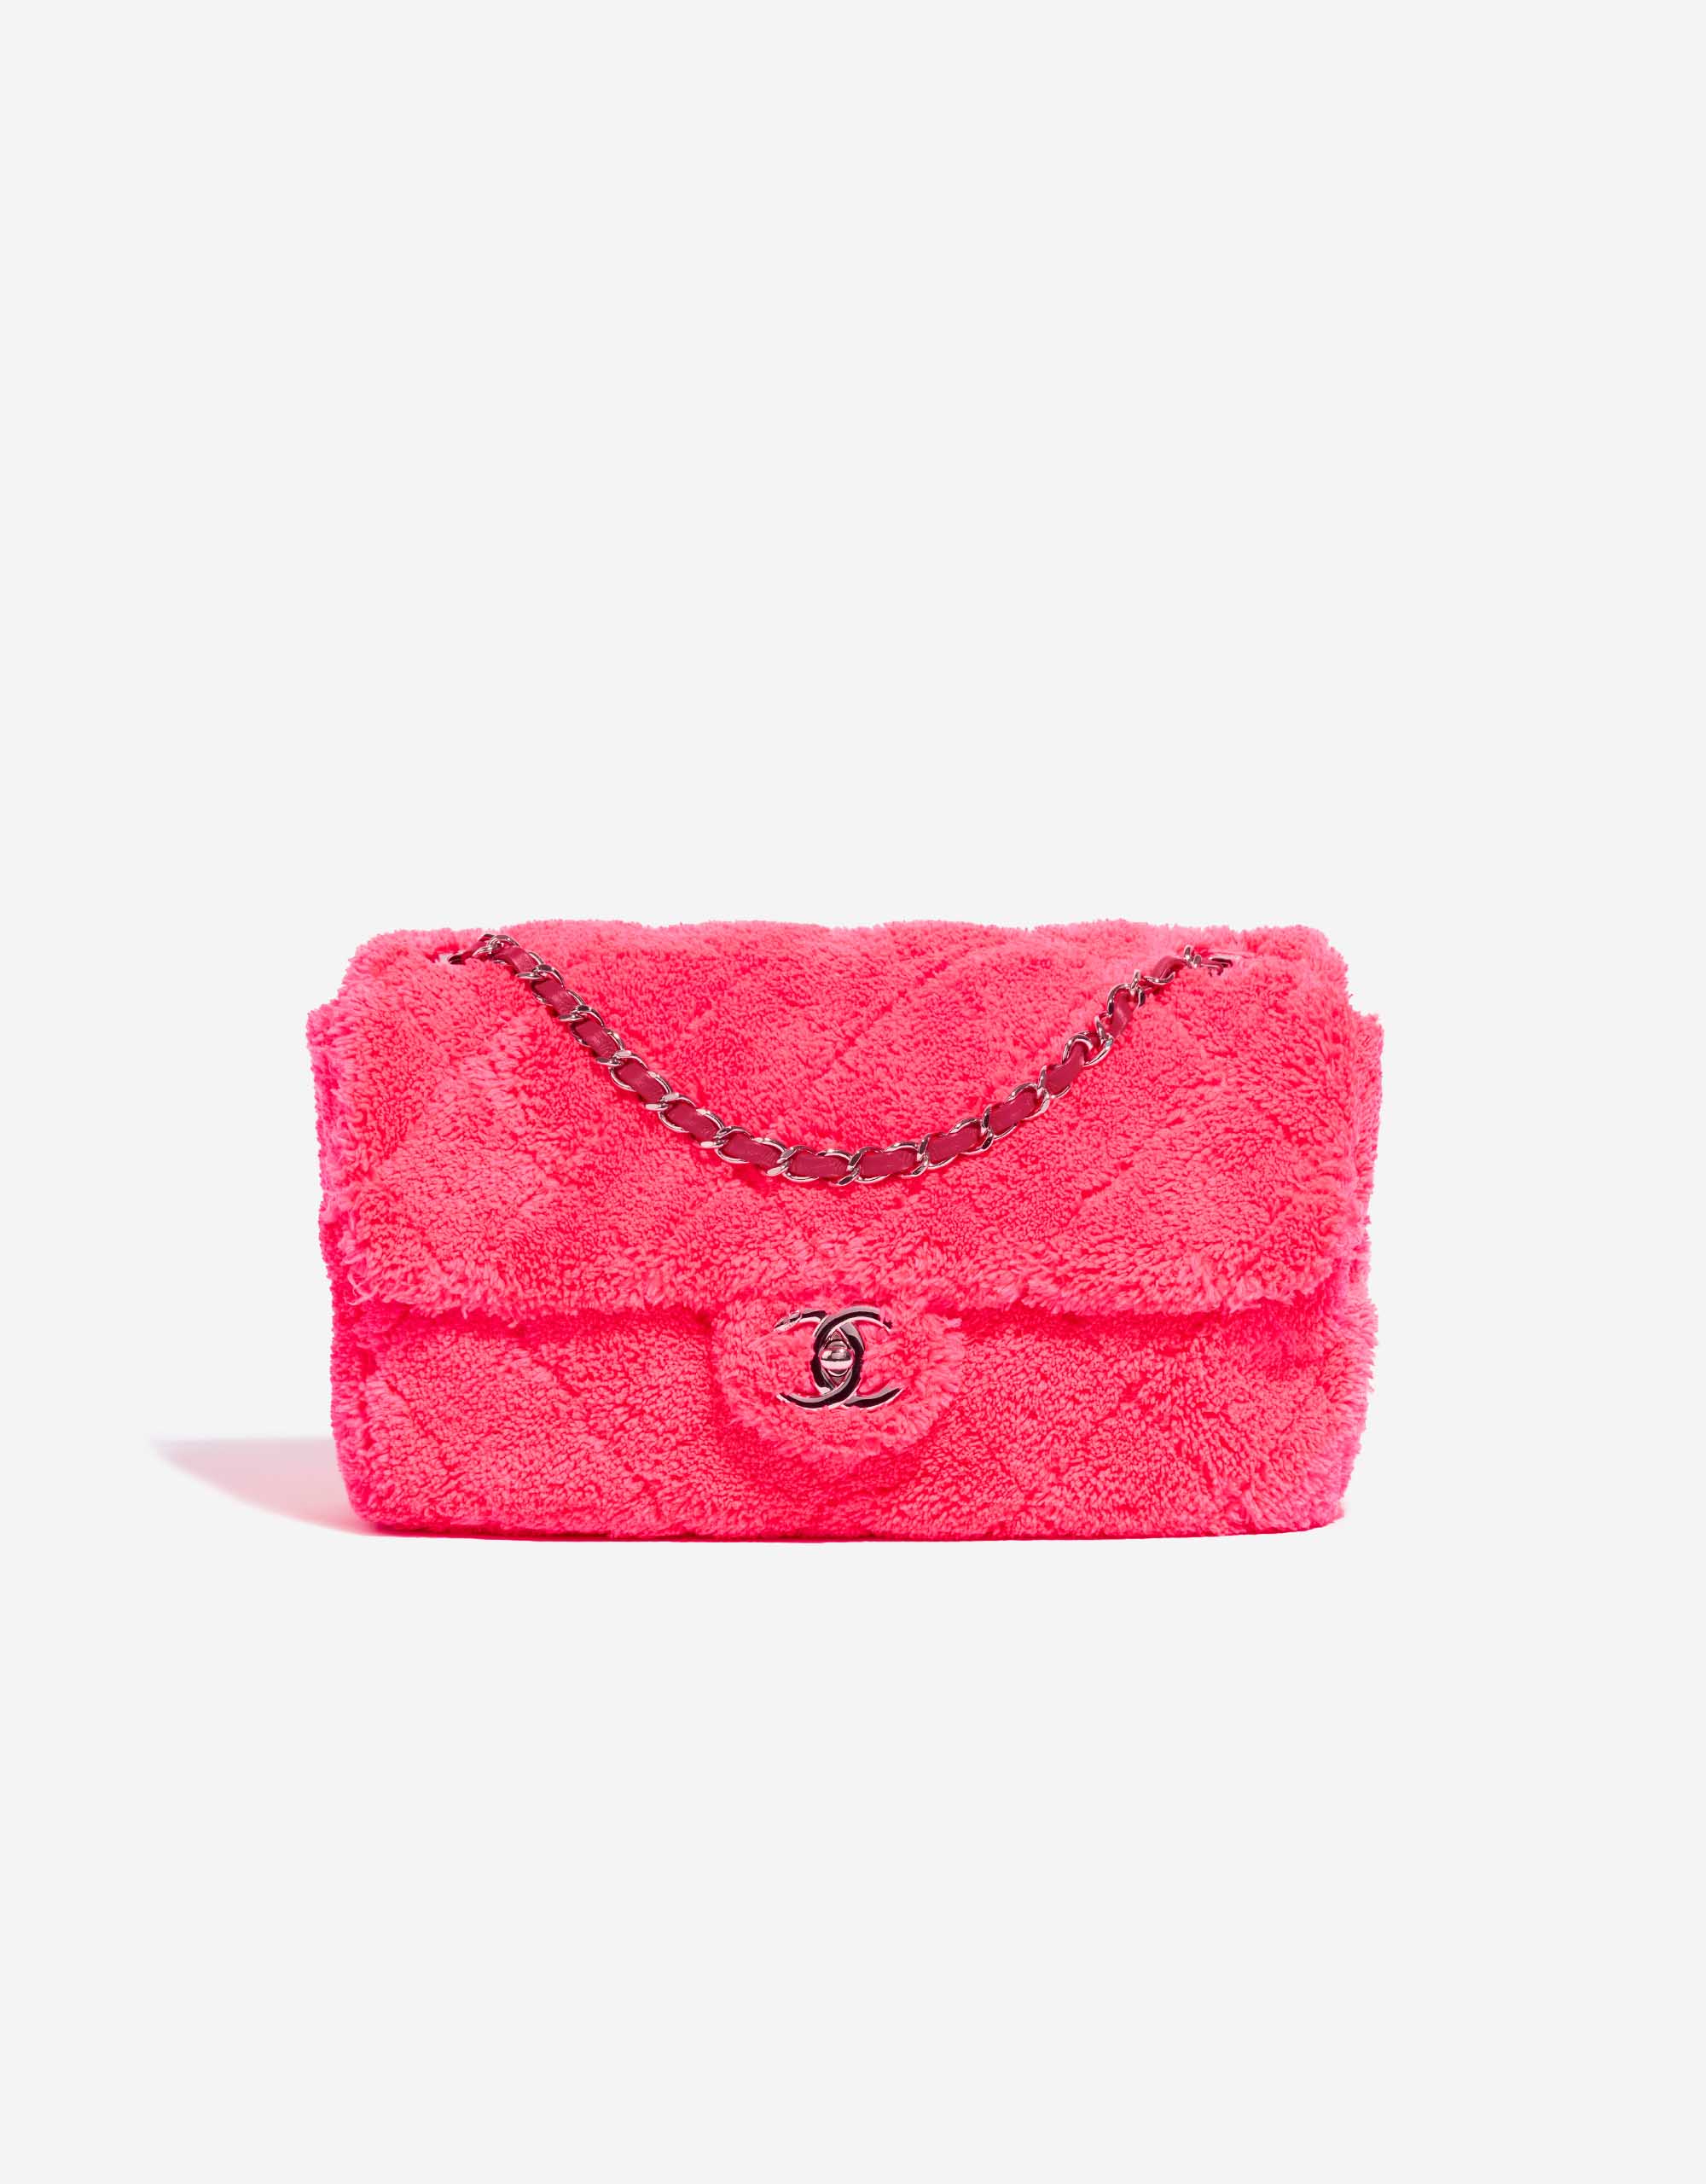 Chanel 2019 Terry Cloth Flap Bag - Shoulder Bags, Handbags